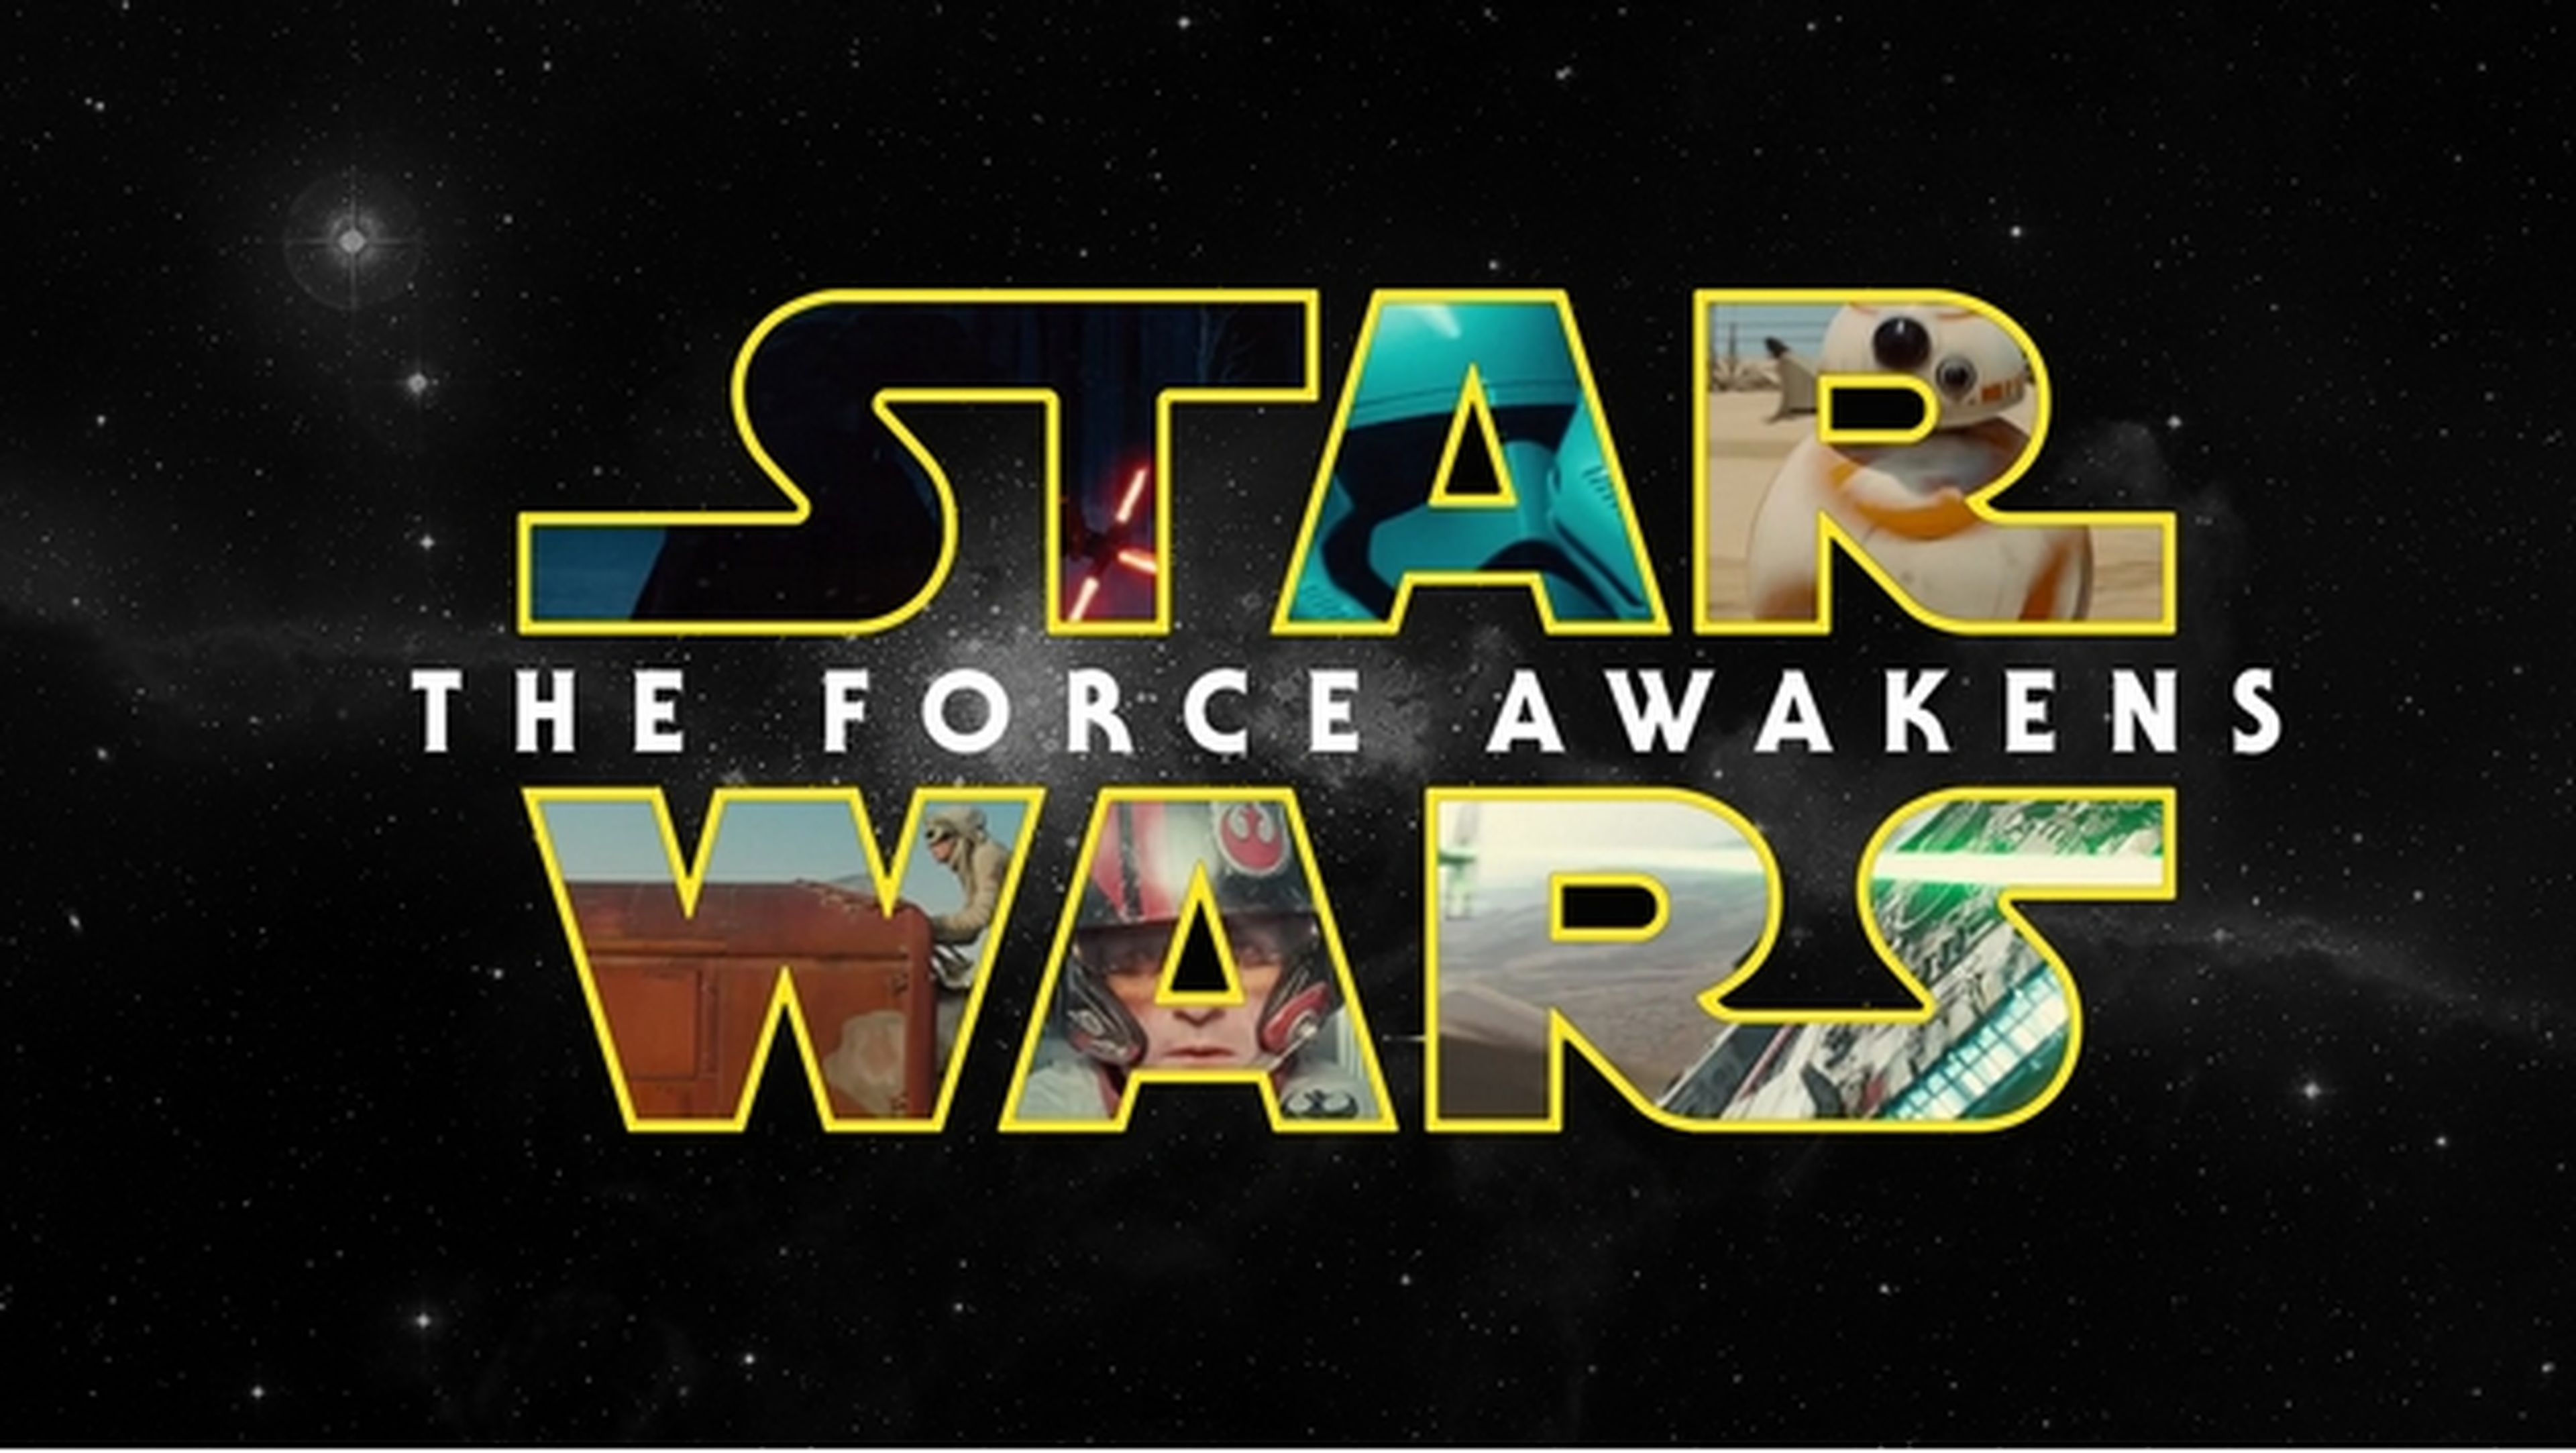 Star Wars El Despertar de la Fuerza arrasa en taquilla con 517 millones de dólares el primer fin de semana.